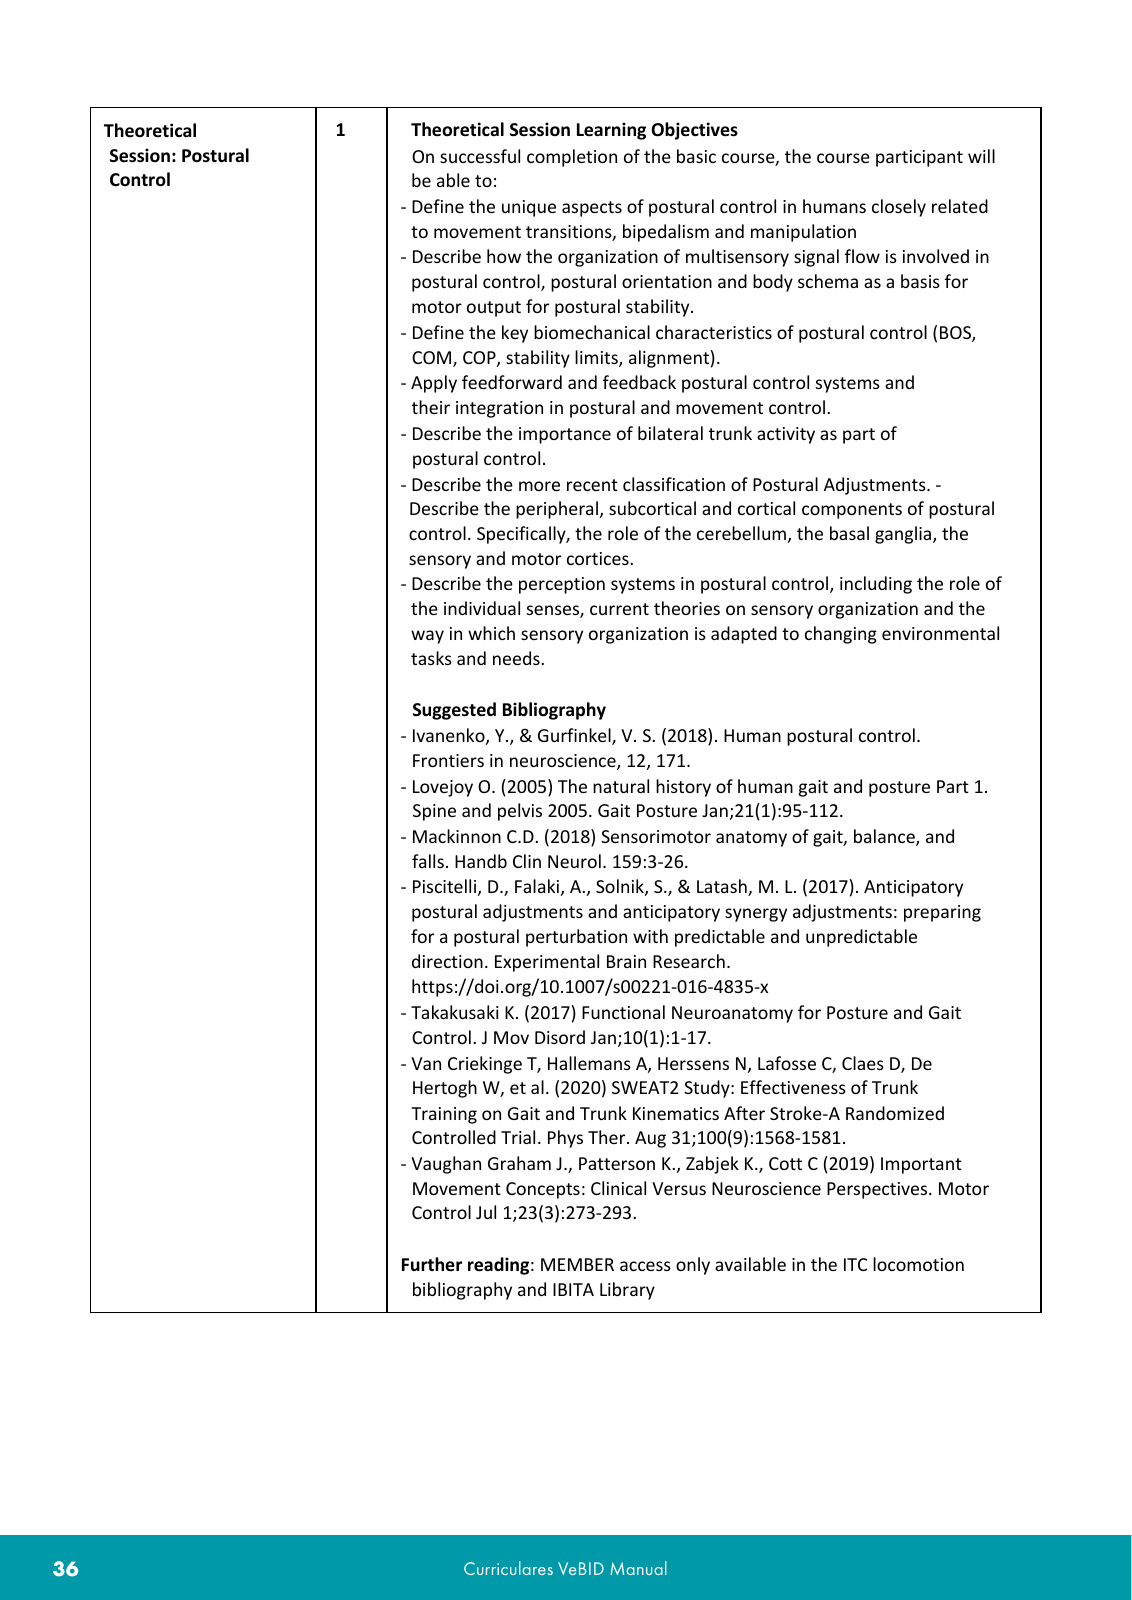 Vorschau VeBID Curriculum 2022 Seite 36